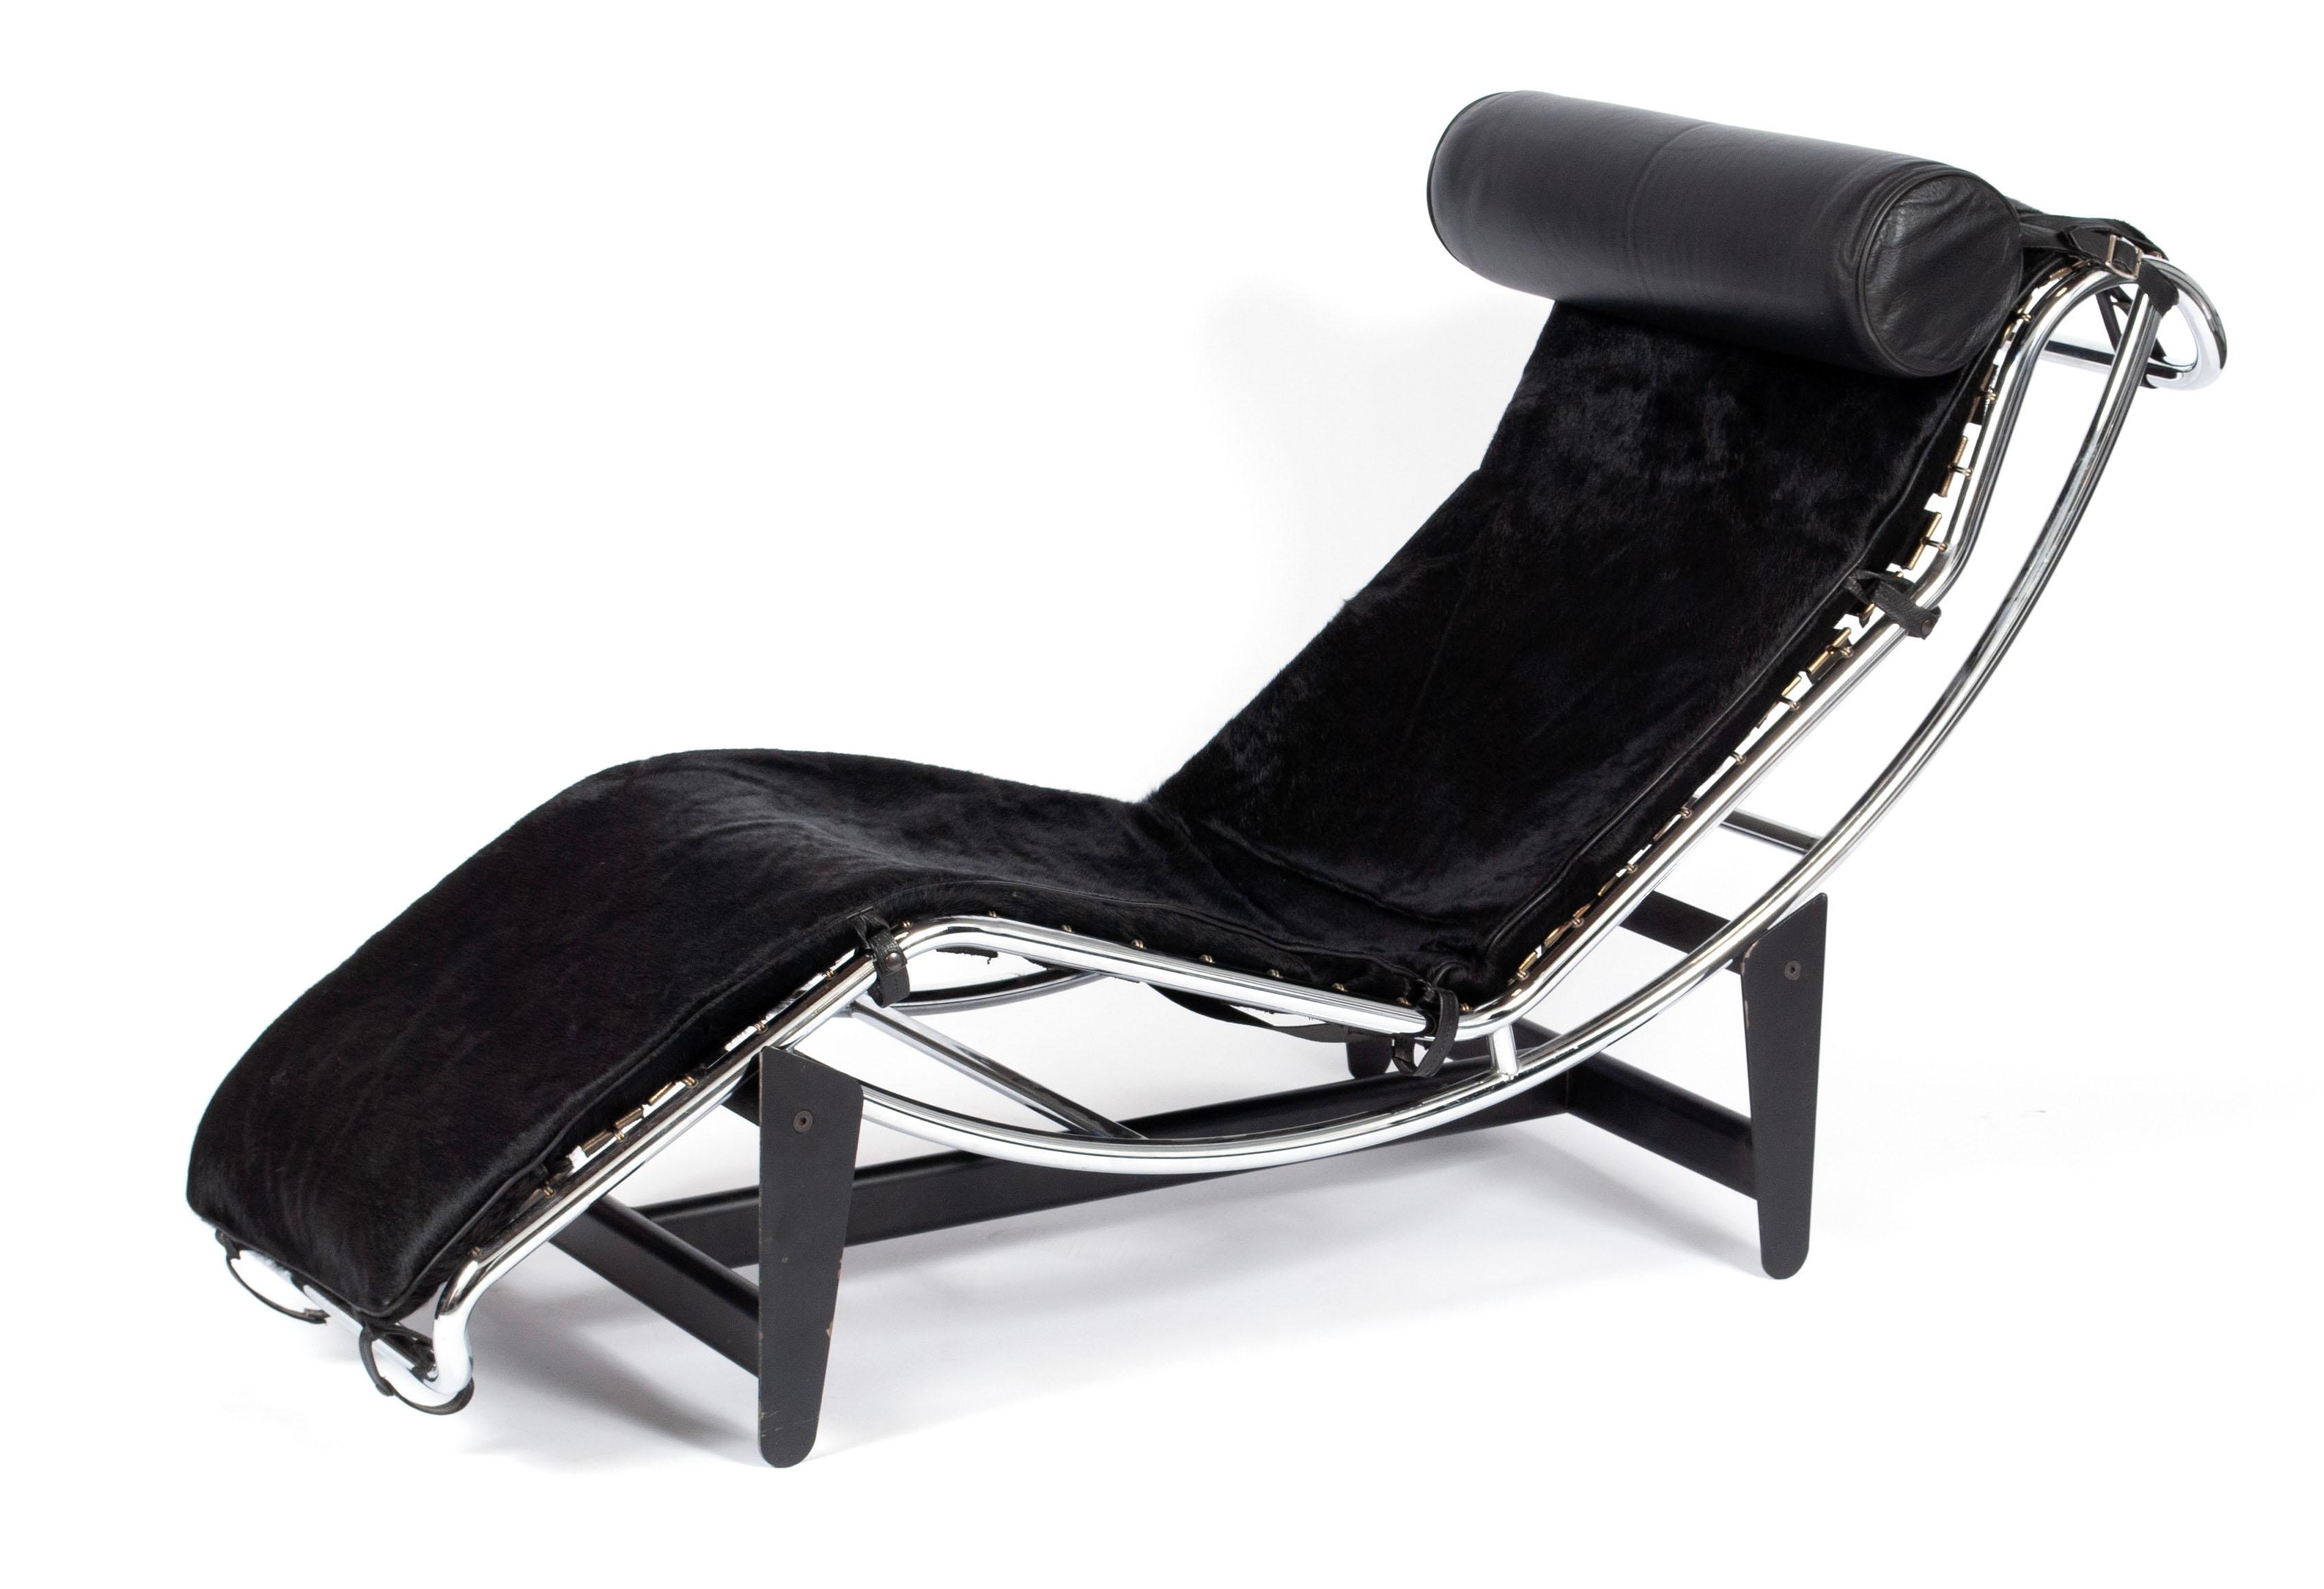 1980s Le Corbusier Lc4 Chaise Lounge